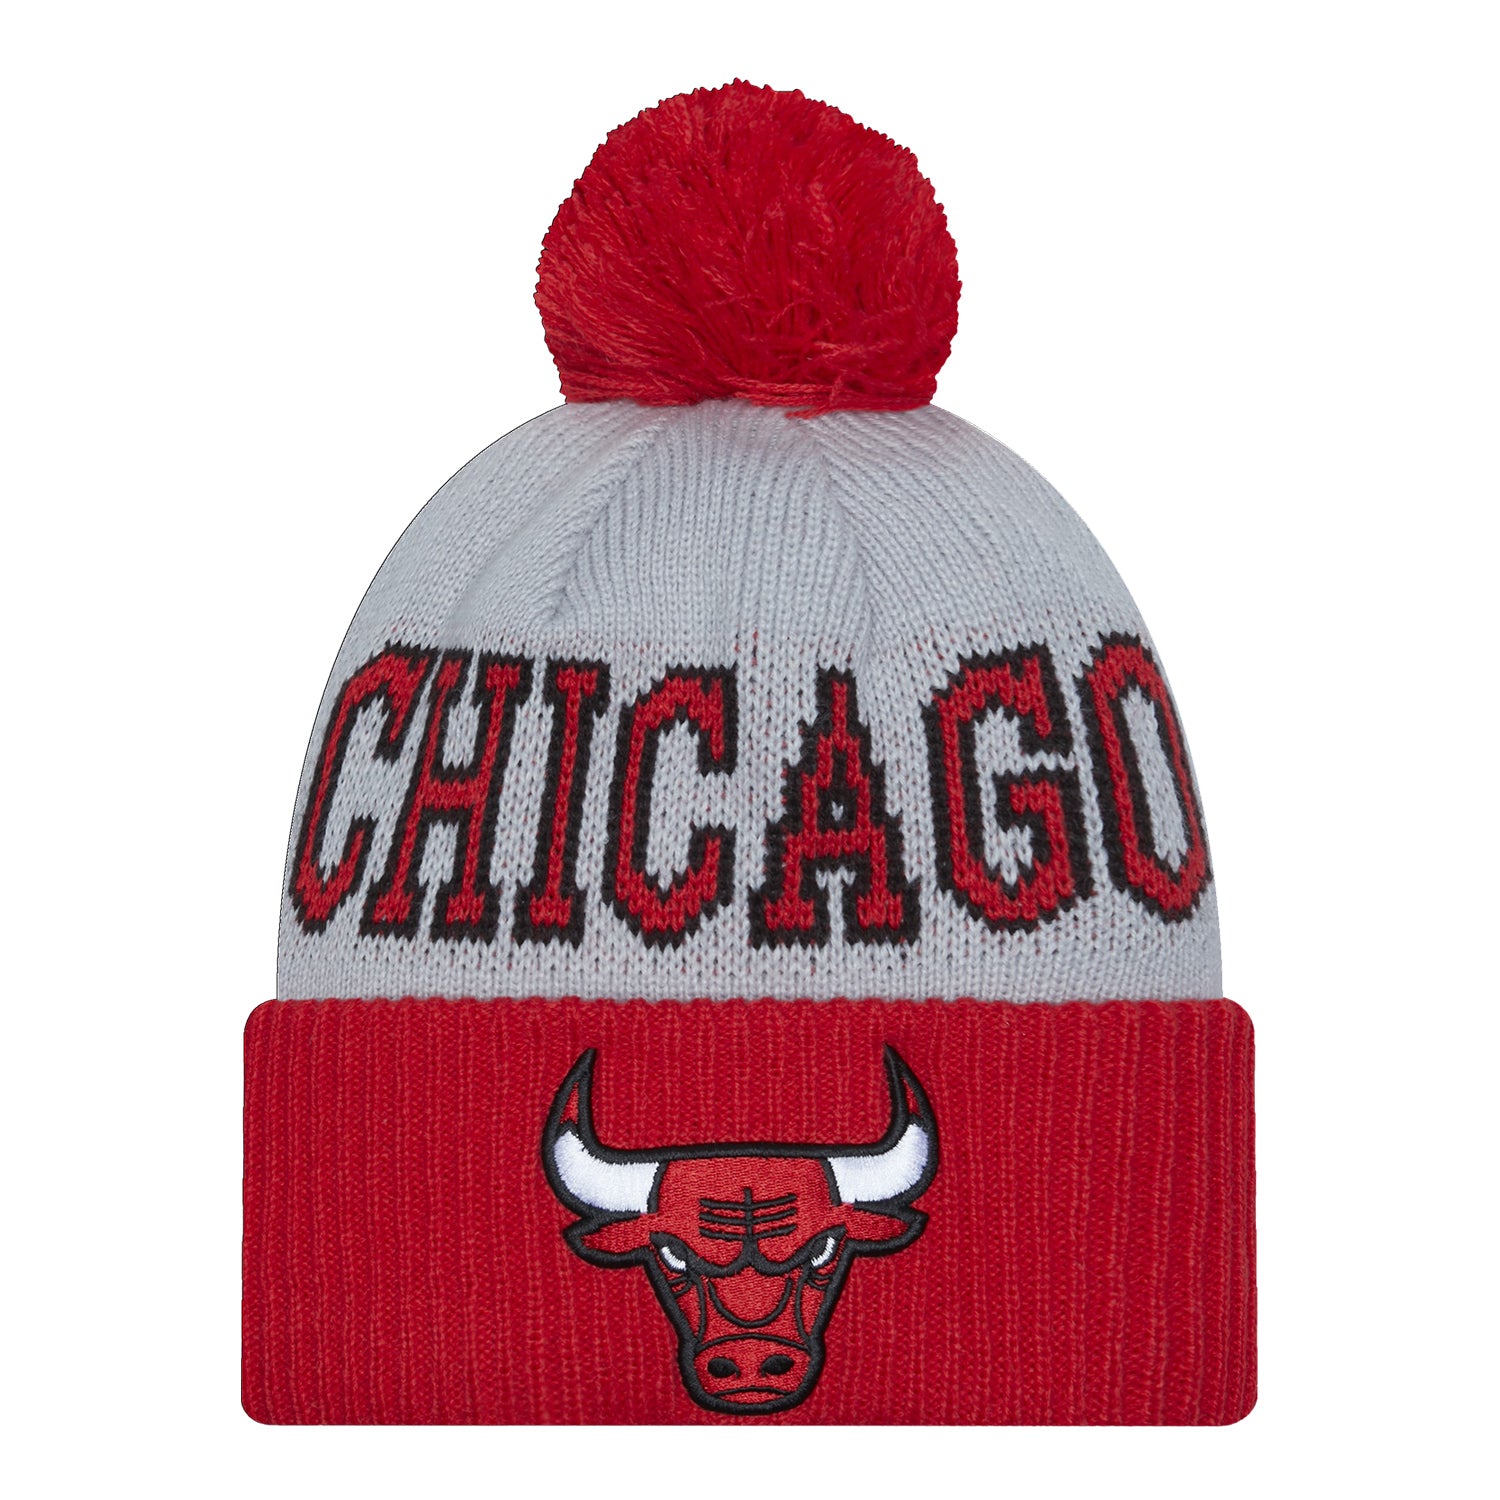 Nba Chicago Bulls Beanie Cap Winter Hats